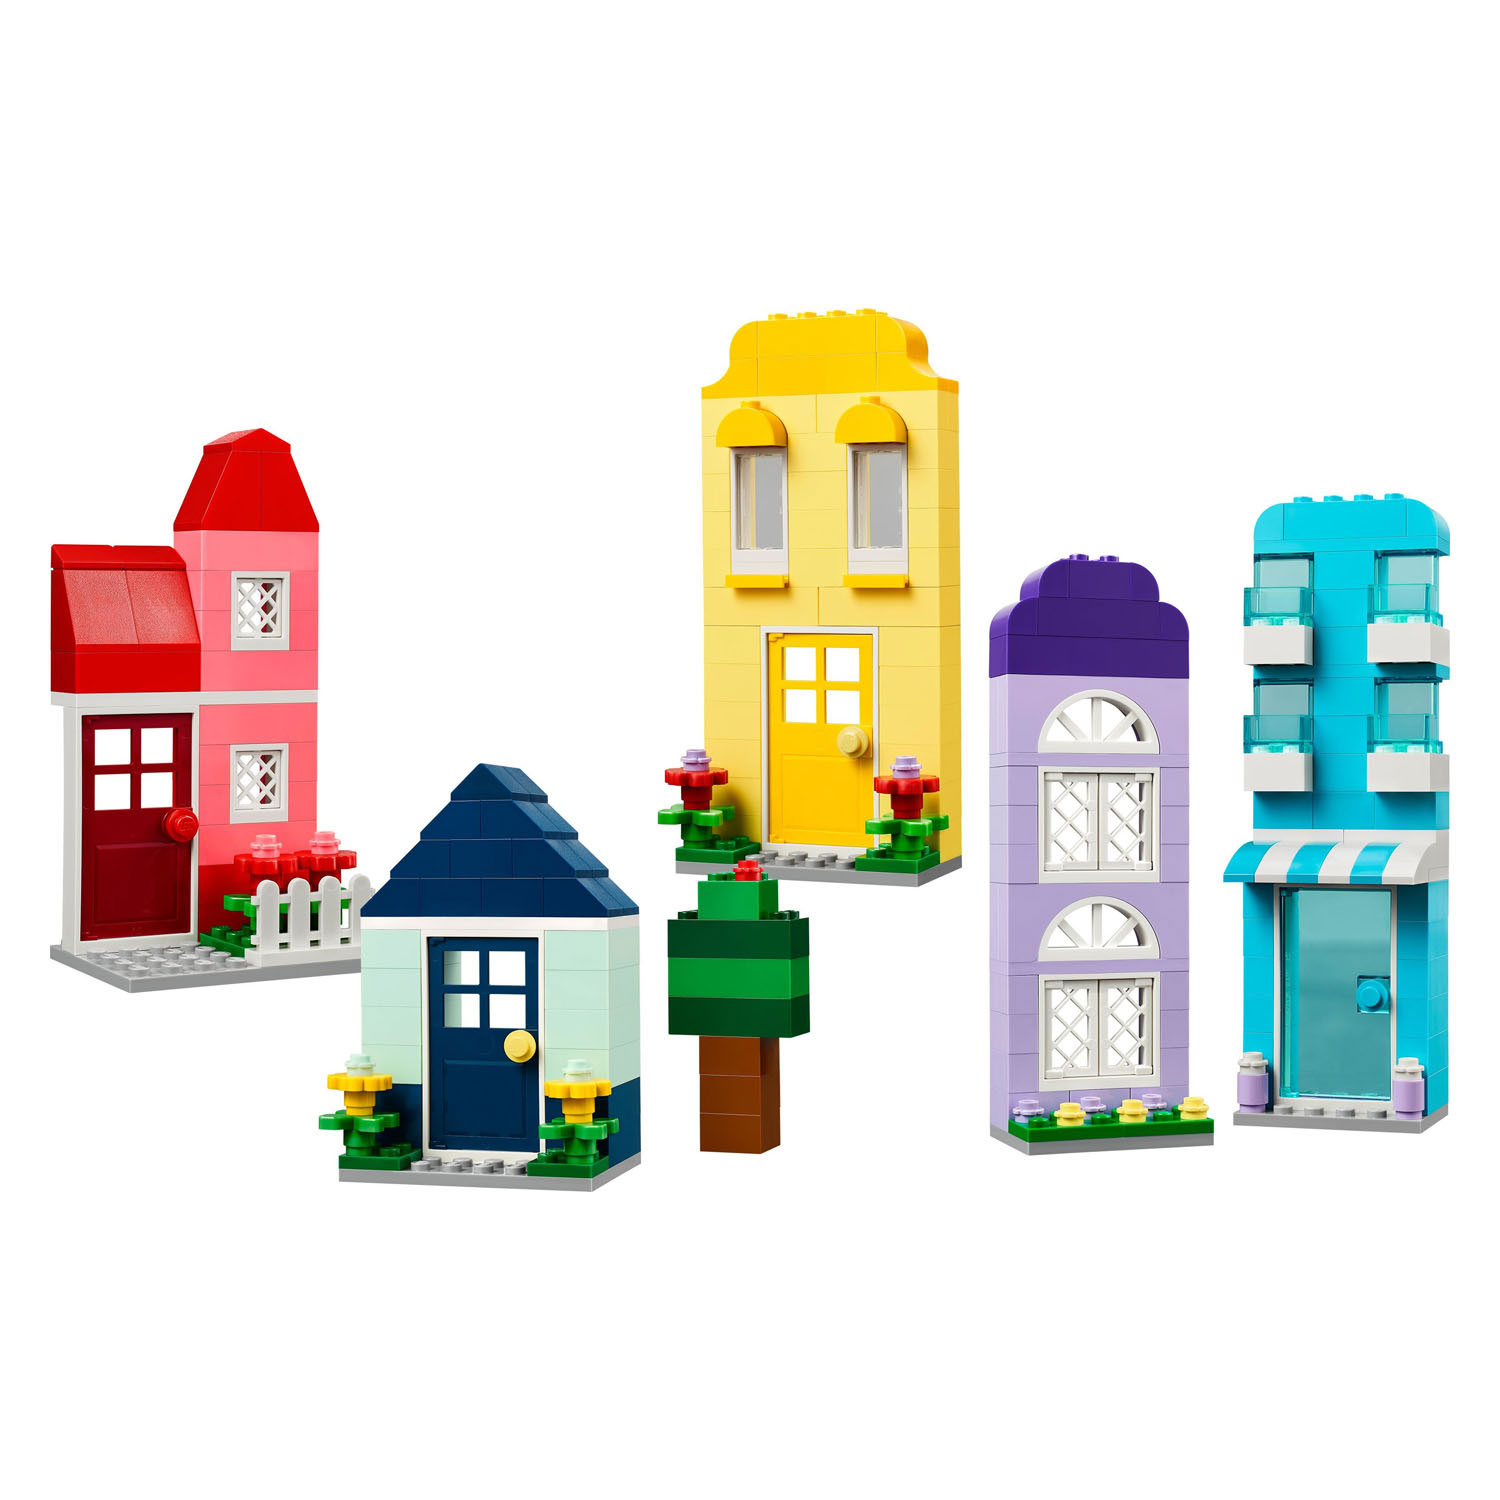 LEGO Classic 11035 Creatieve Huizen